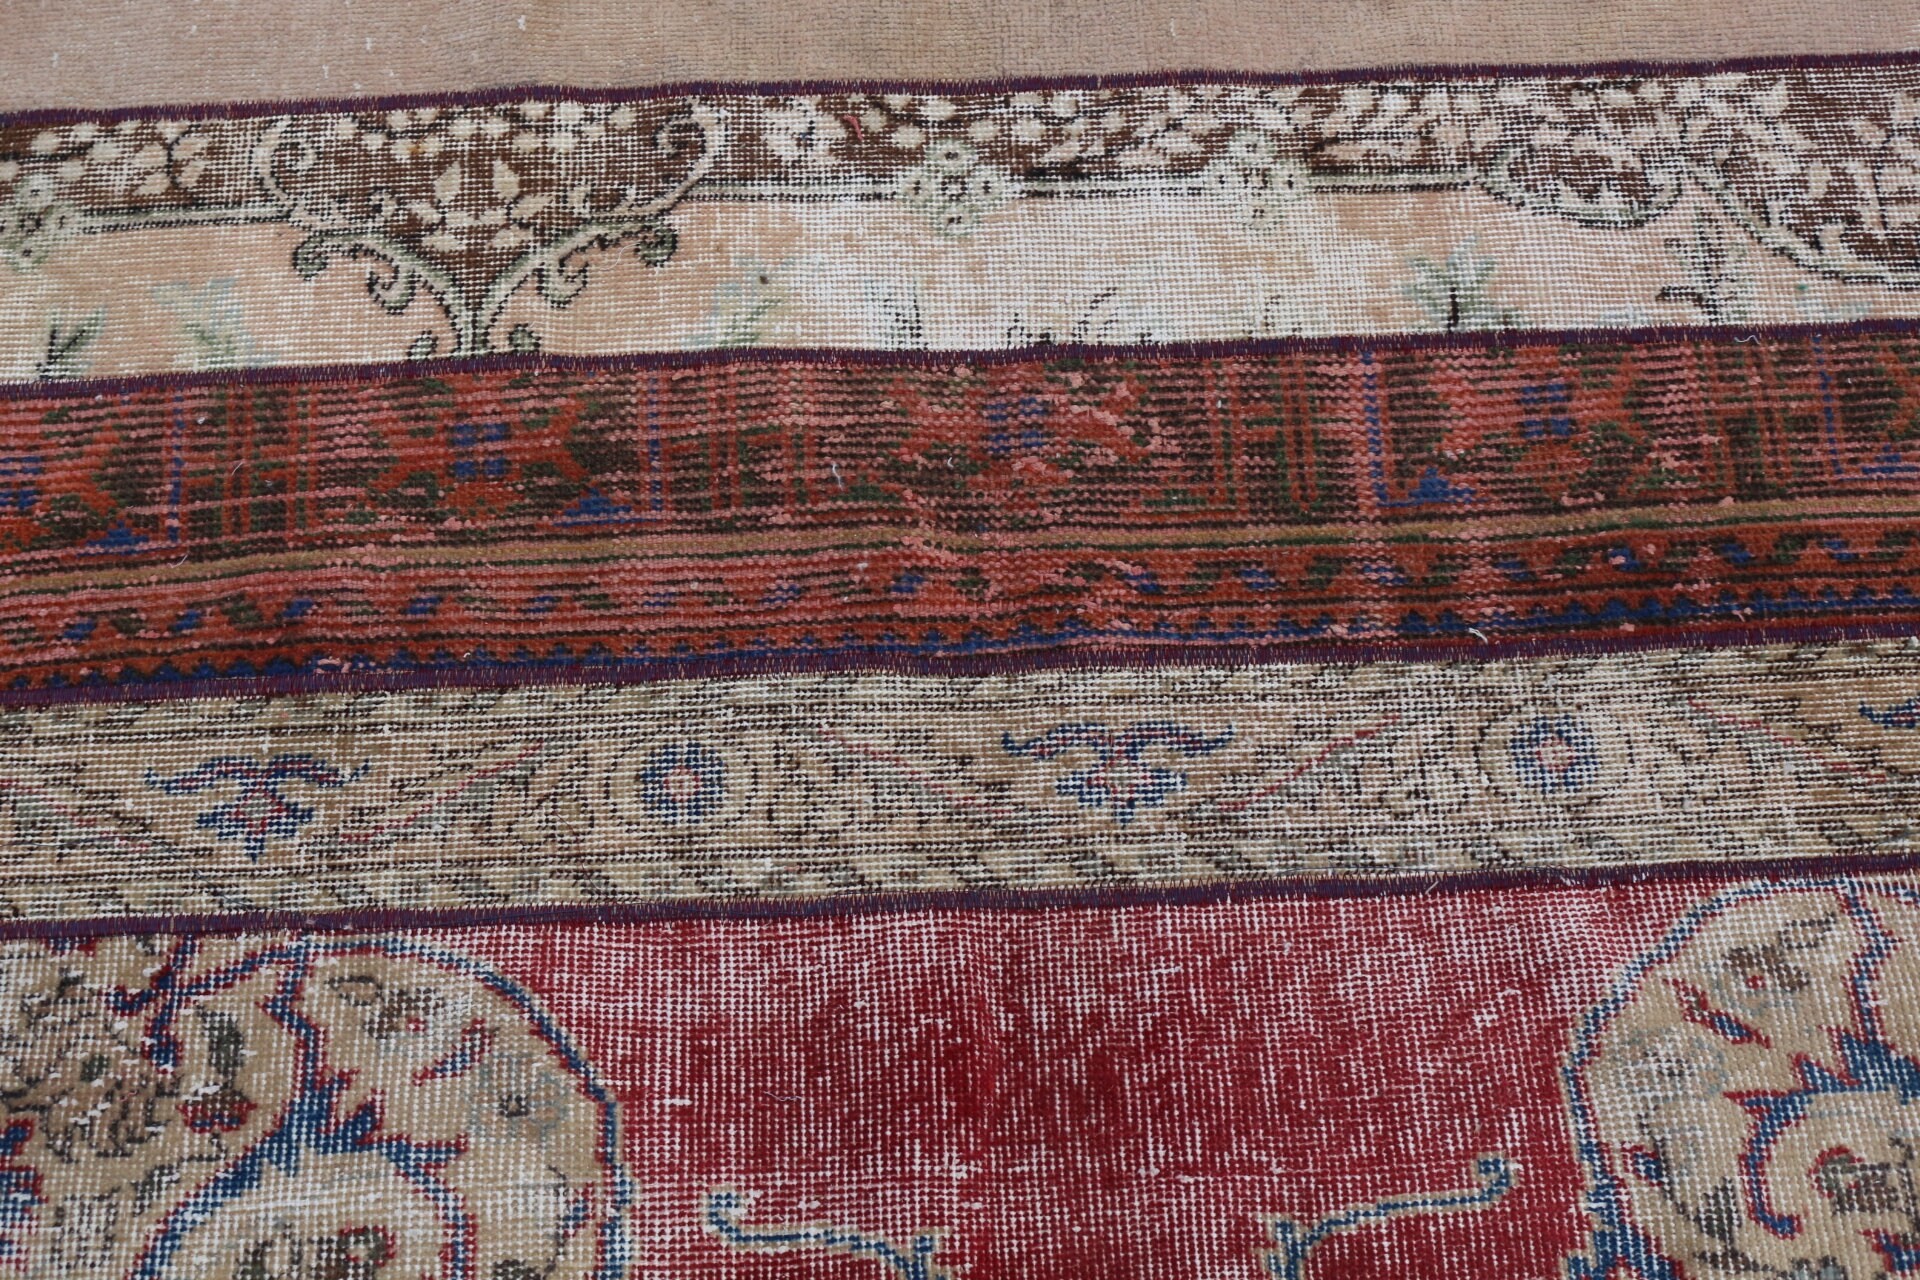 Car Mat Rug, Art Rug, 3.2x4.2 ft Small Rug, Door Mat Rug, Rainbow Anatolian Rug, Vintage Rugs, Home Decor Rug, Turkish Rug